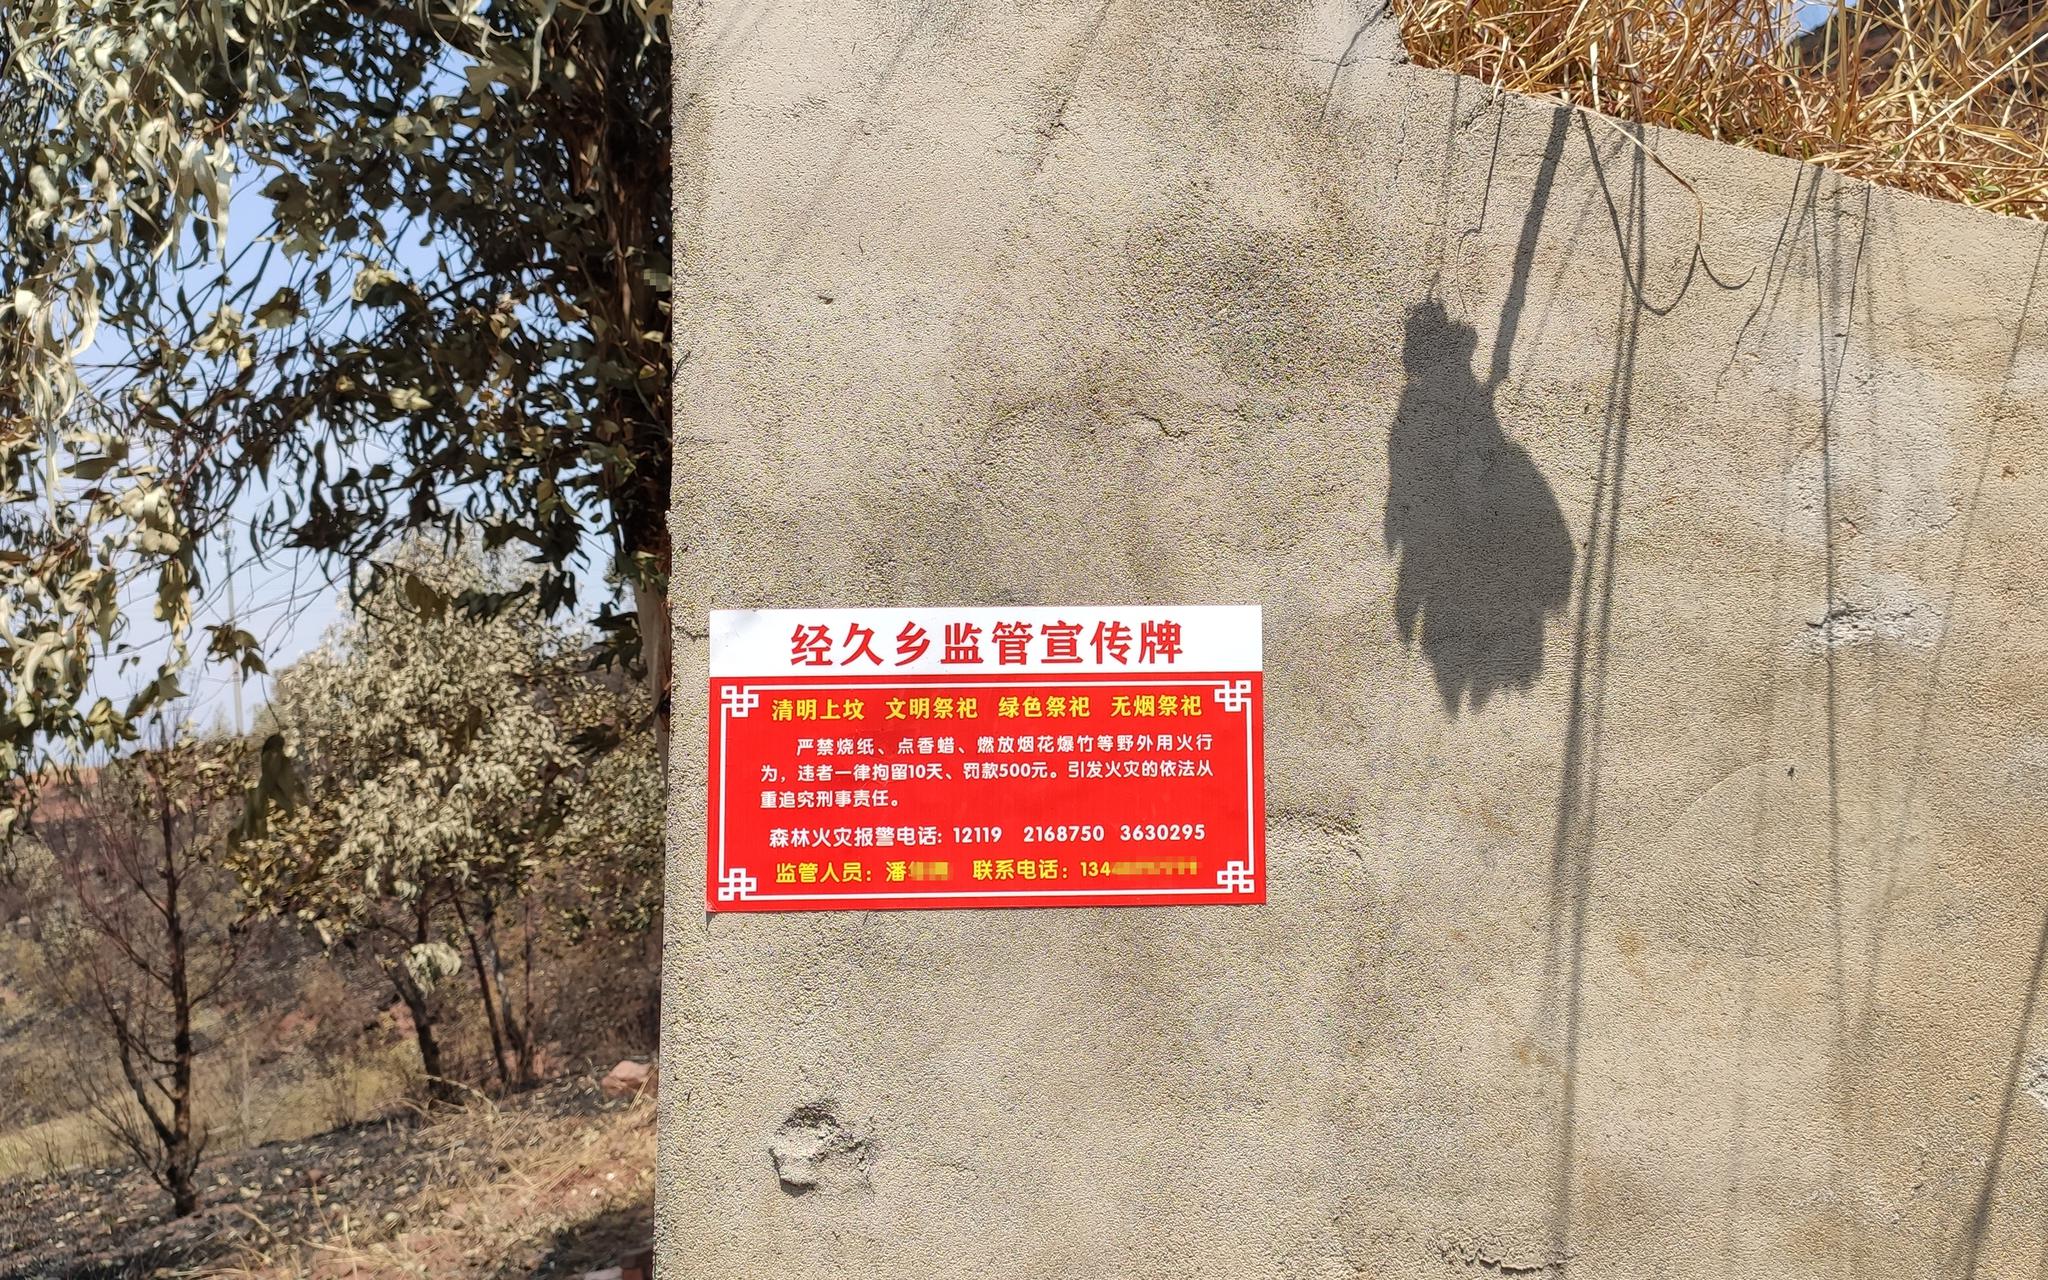 马鞍山村山上不少坟墓都贴了防火监管宣传牌。